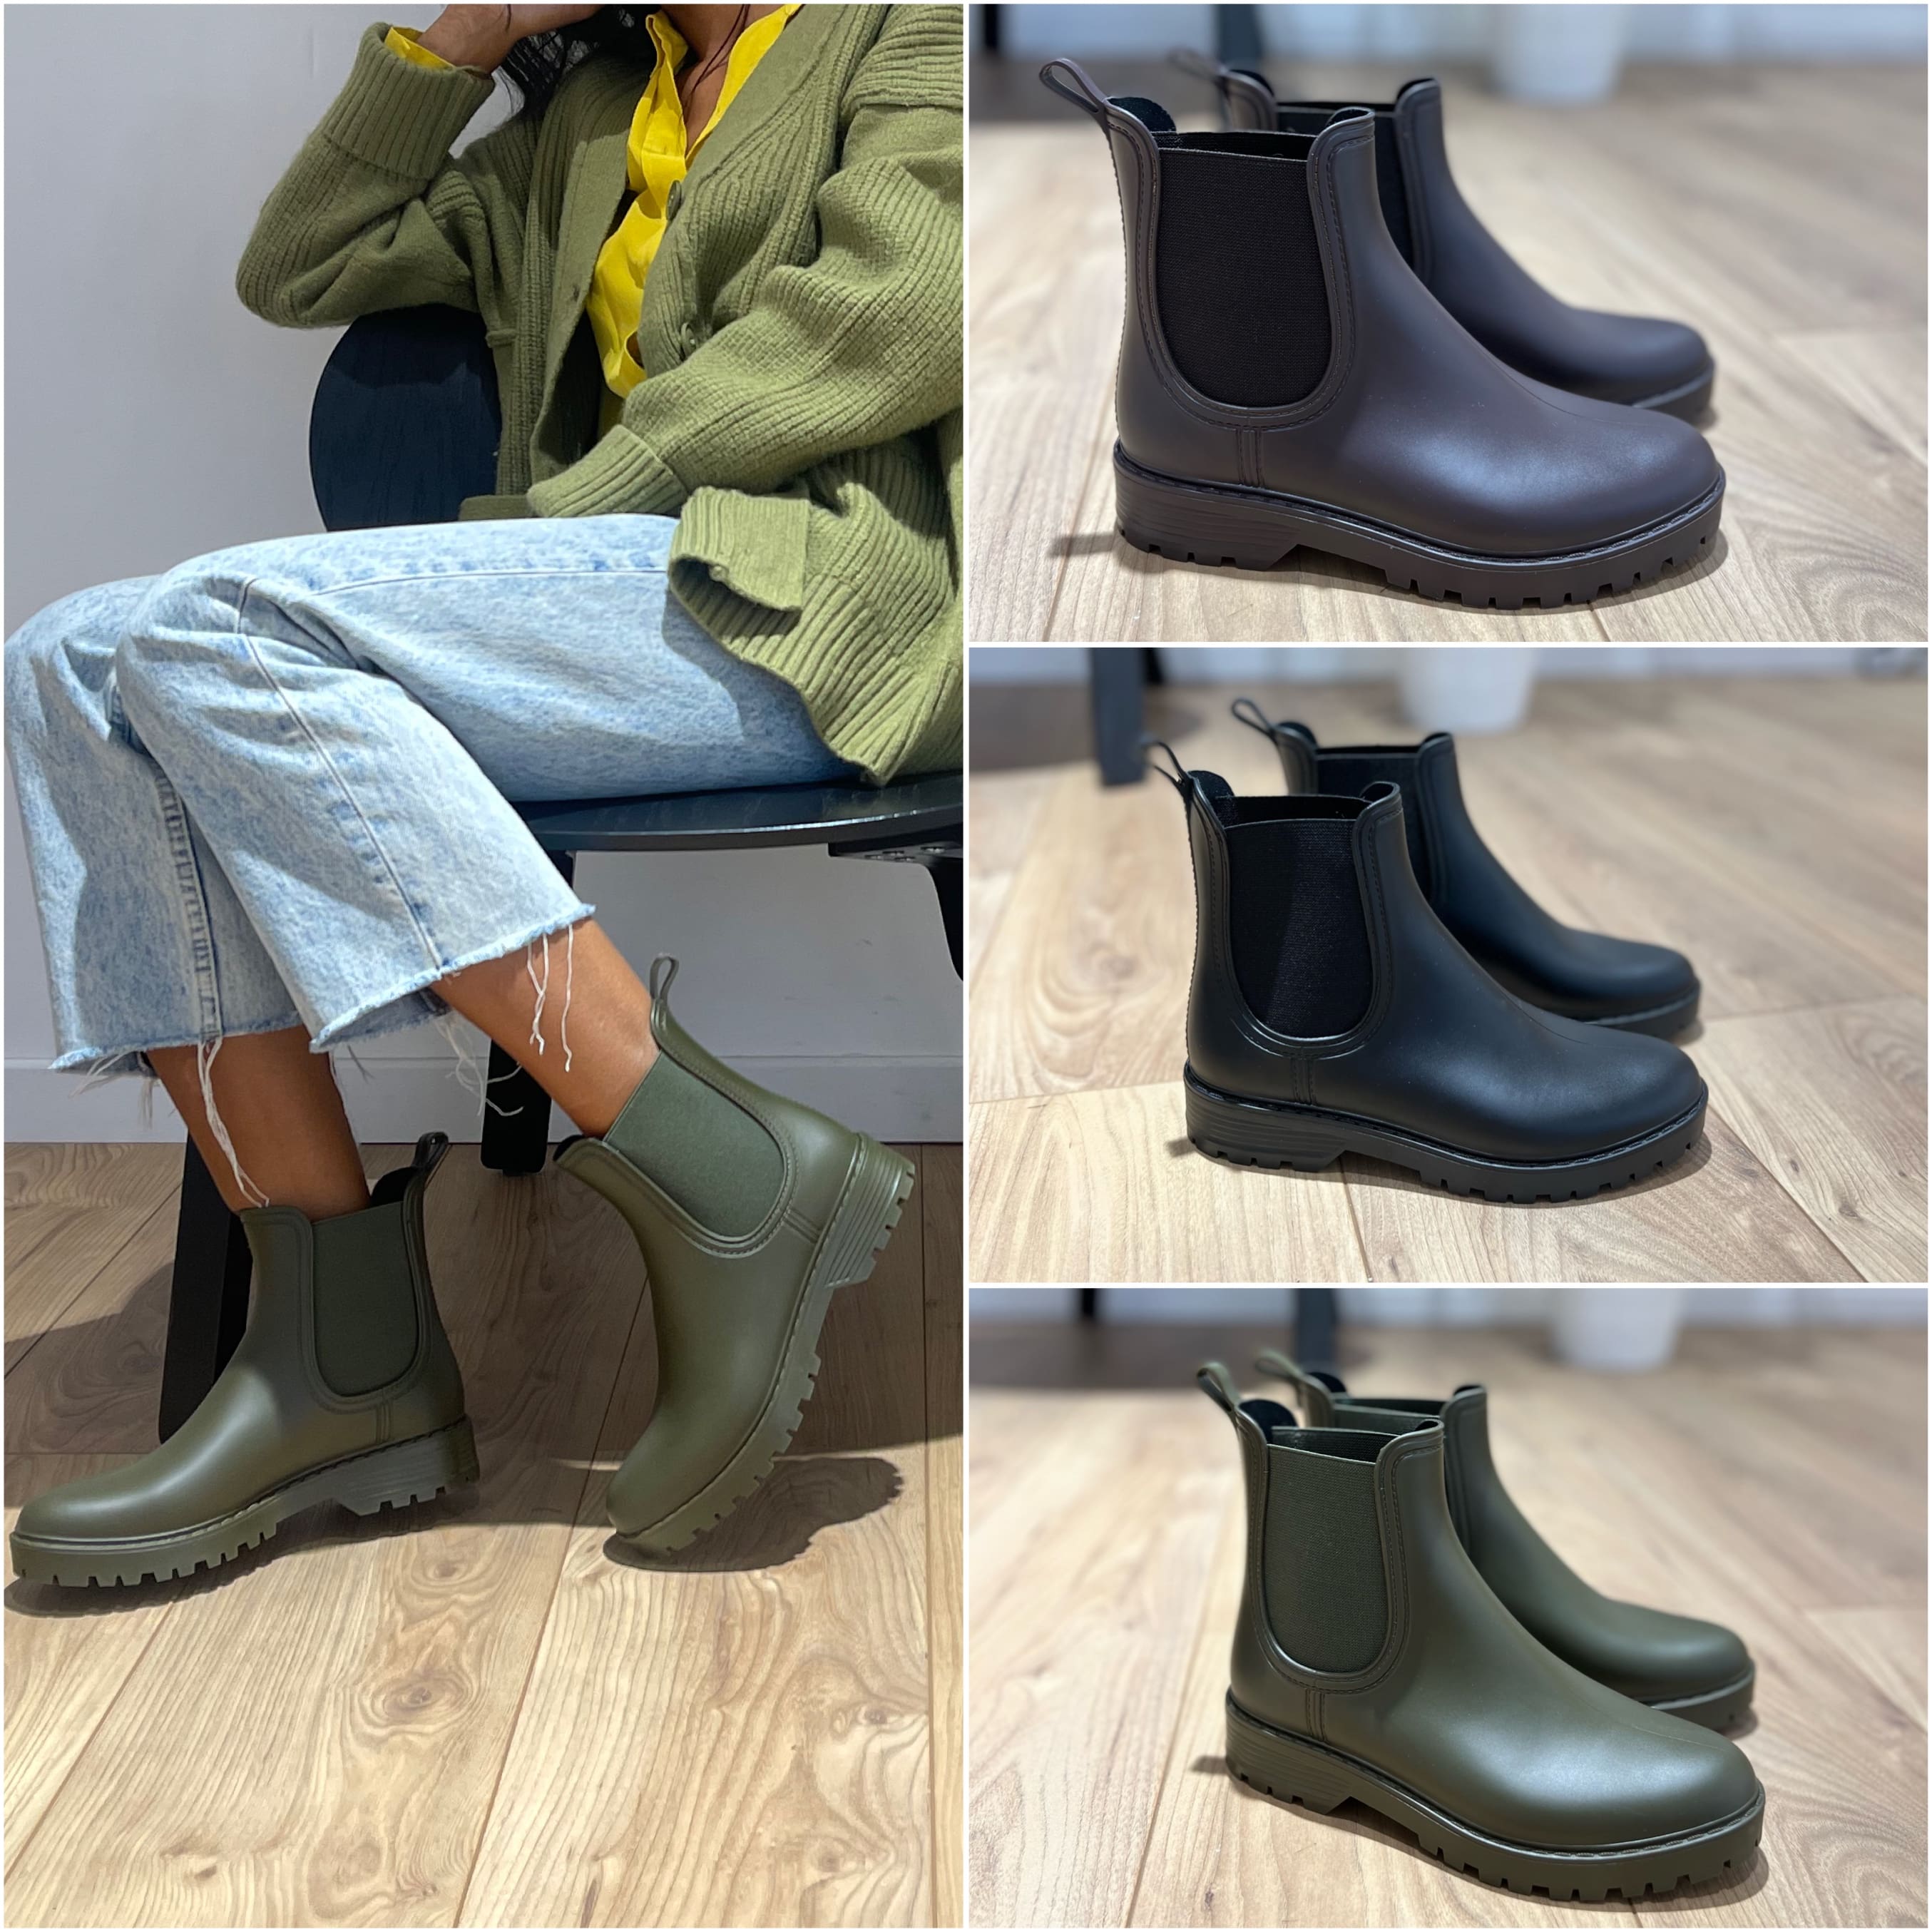 Boots de pluie - 3 Coloris